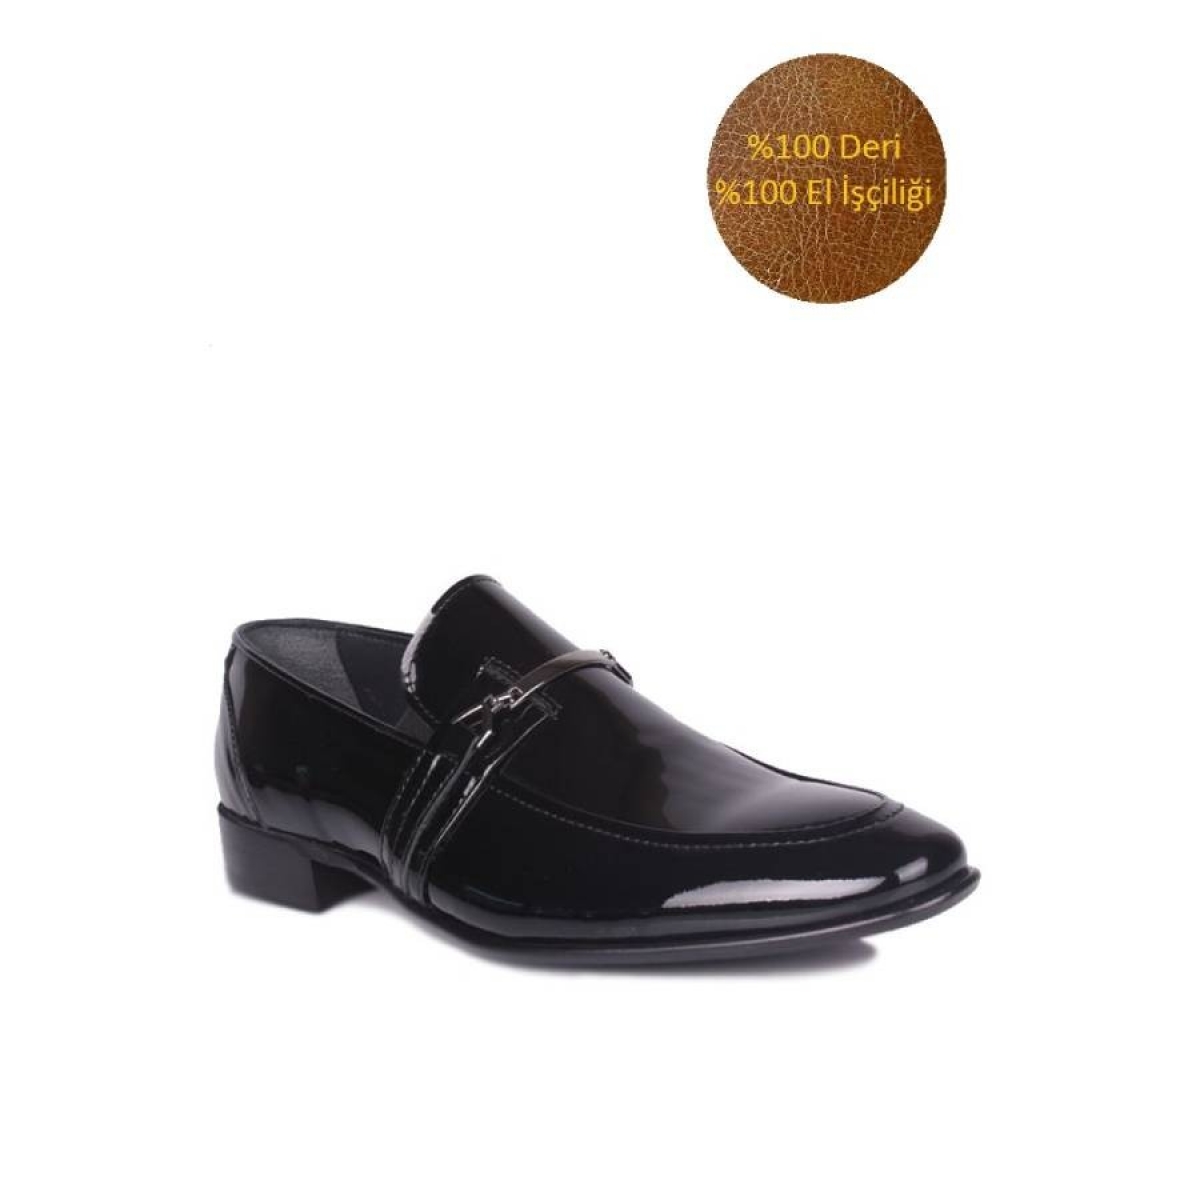 Flo - Erkan Kaban 972 020 Erkek Siyah Rugan Klasik Büyük & Küçük Numara Ayakkabı. 2